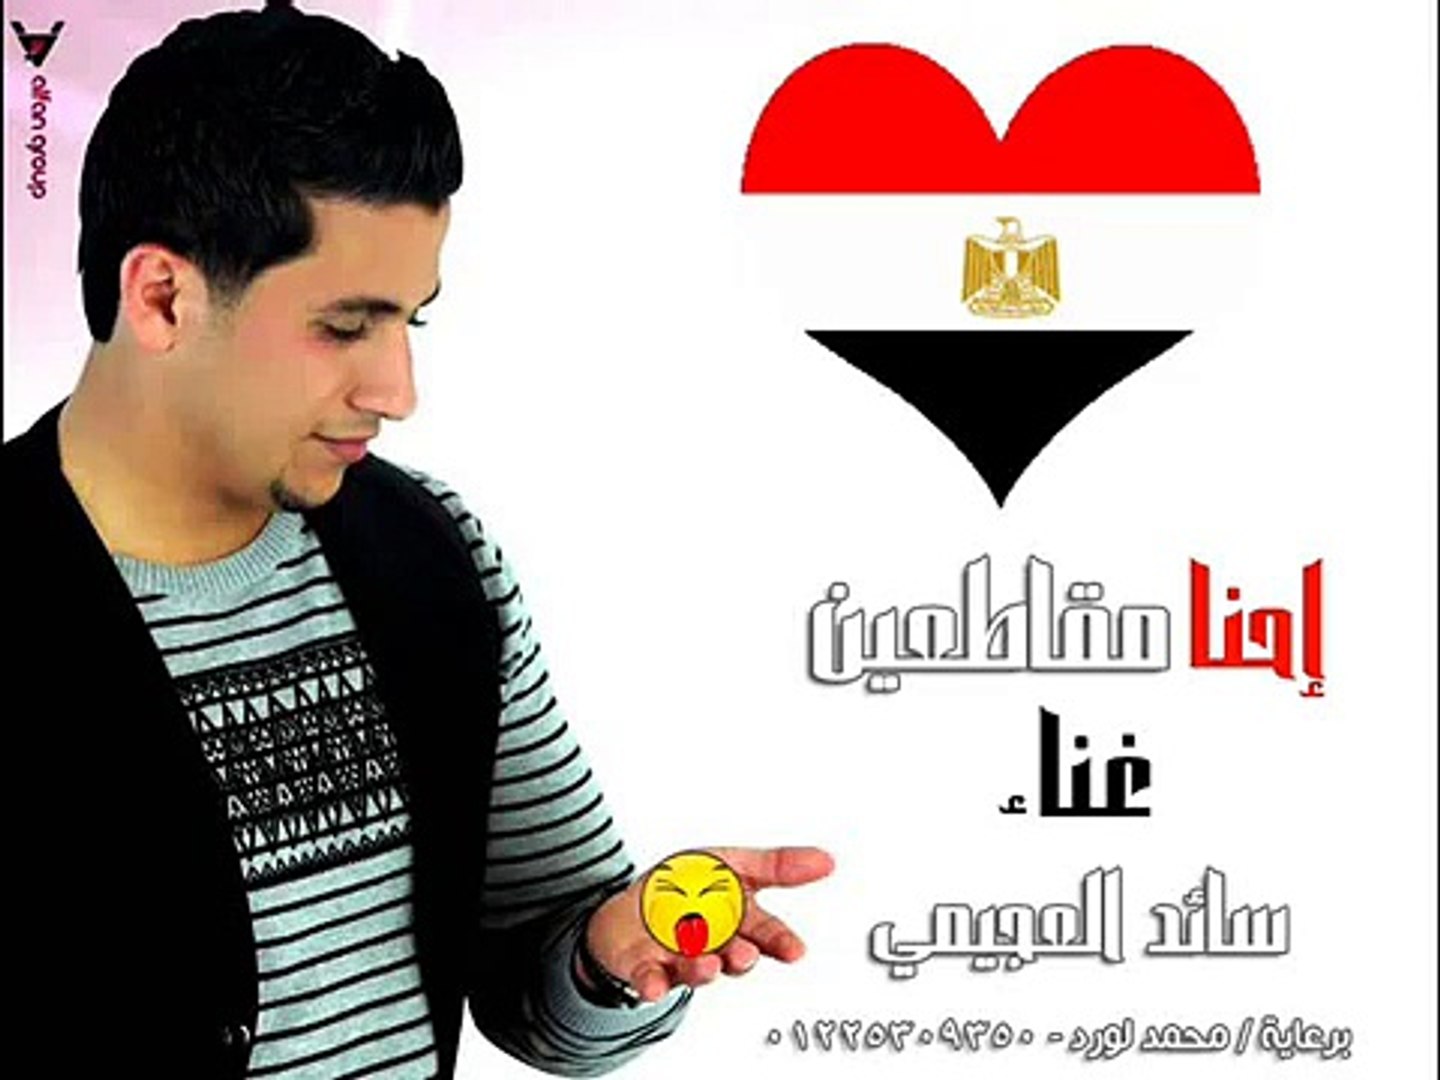 اغنية إحنا مقاطعين الرد على اغنية حسين الجسمي بشرة خير Video